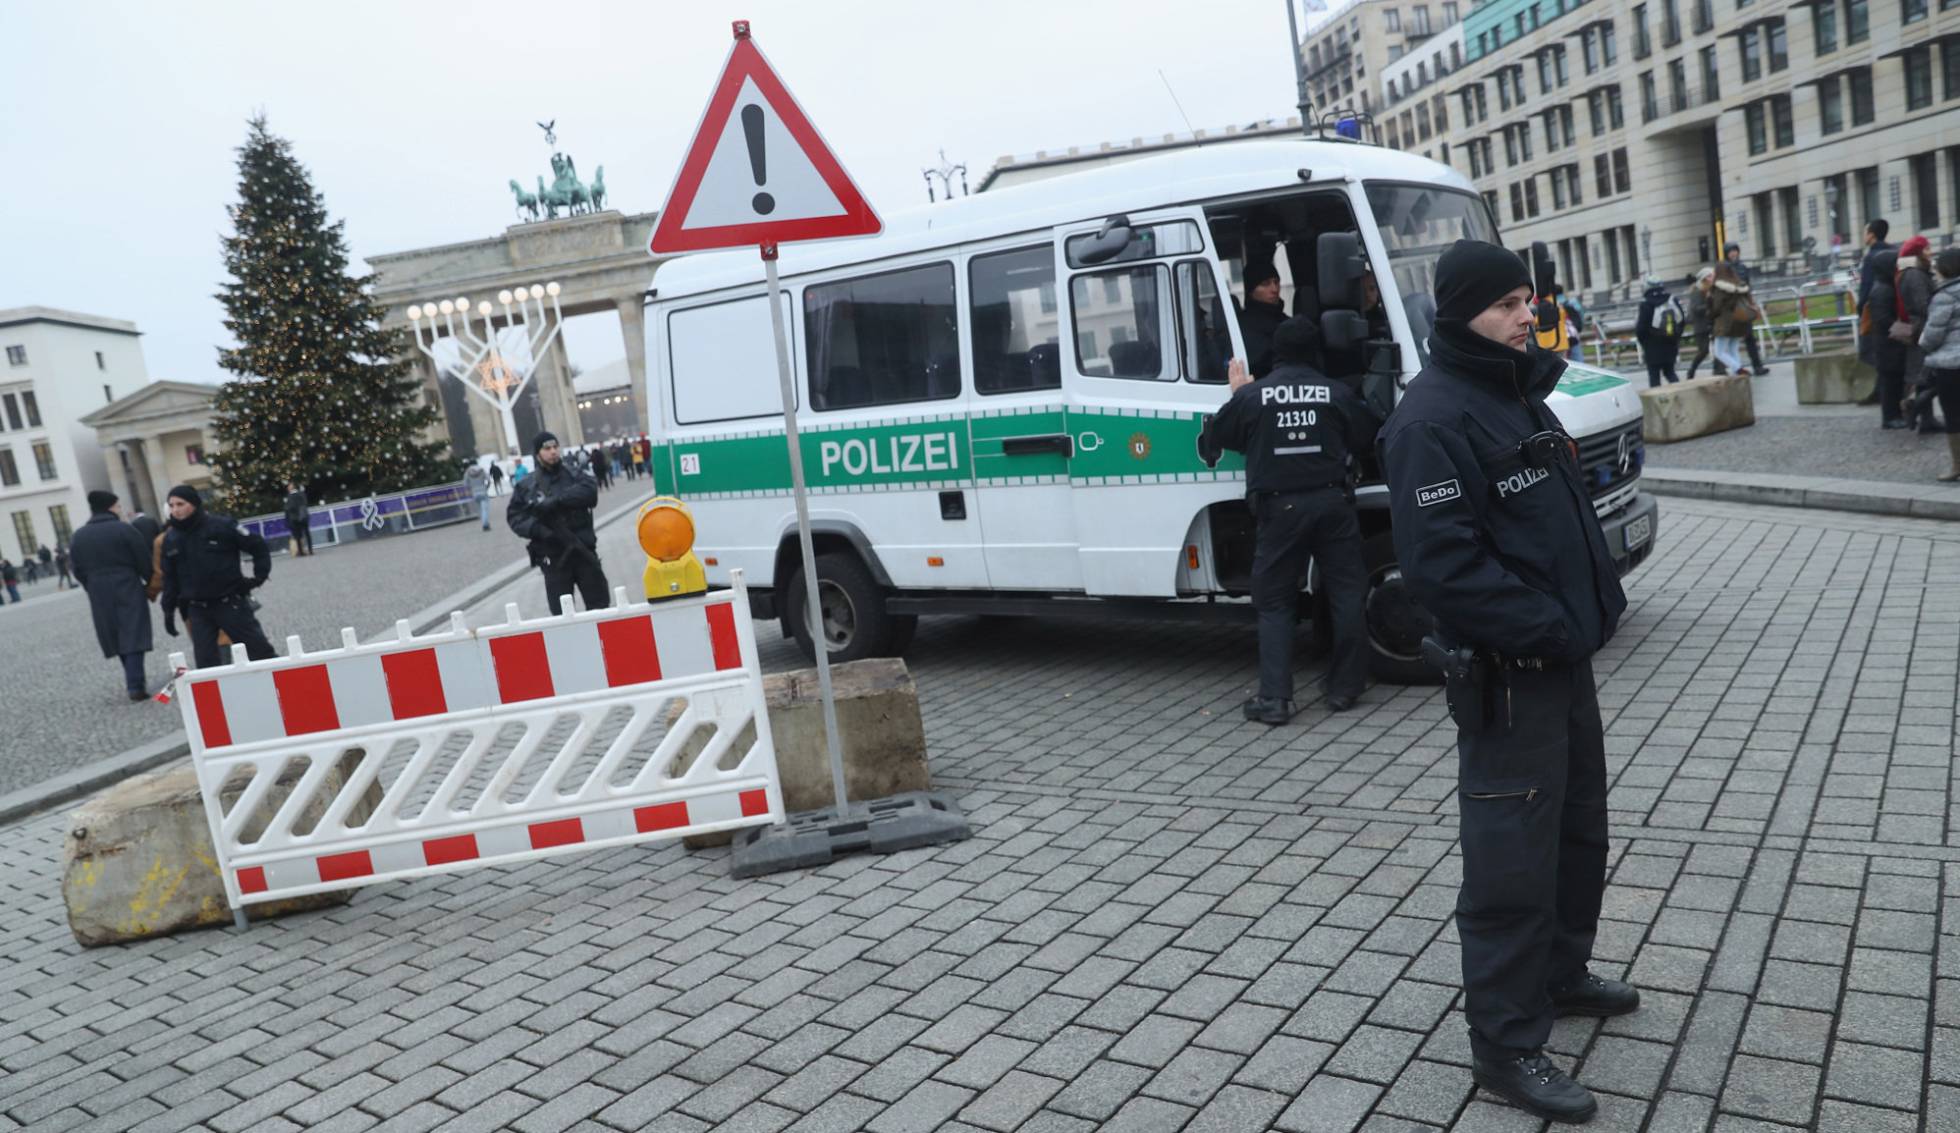 Atentado terrorista en Alemania - Página 2 1482841187_658412_1482842195_noticia_normal_recorte1